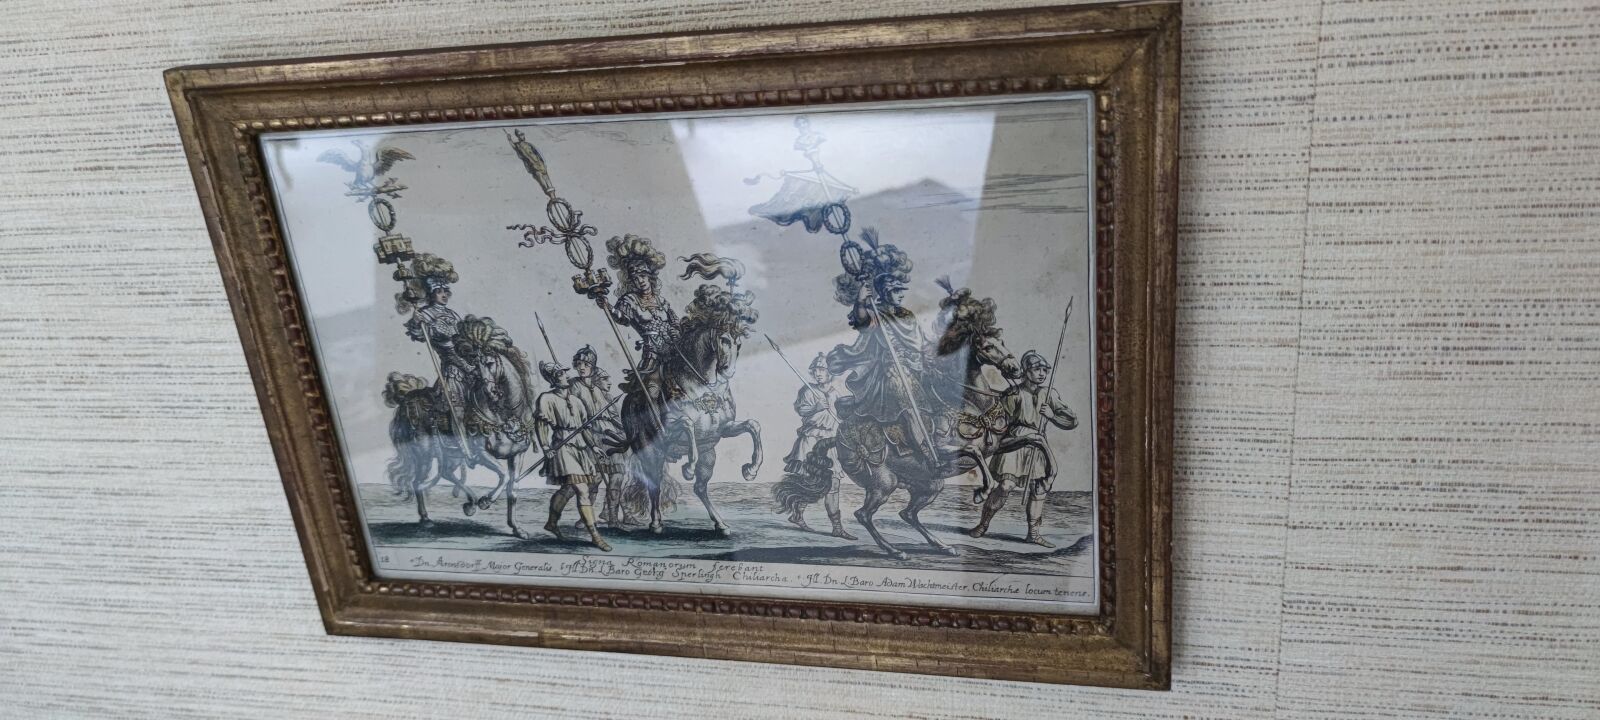 Null Gravur in Farbe.
"Die drei Reiter". 
17. Jahrhundert. 
20 x 33 cm